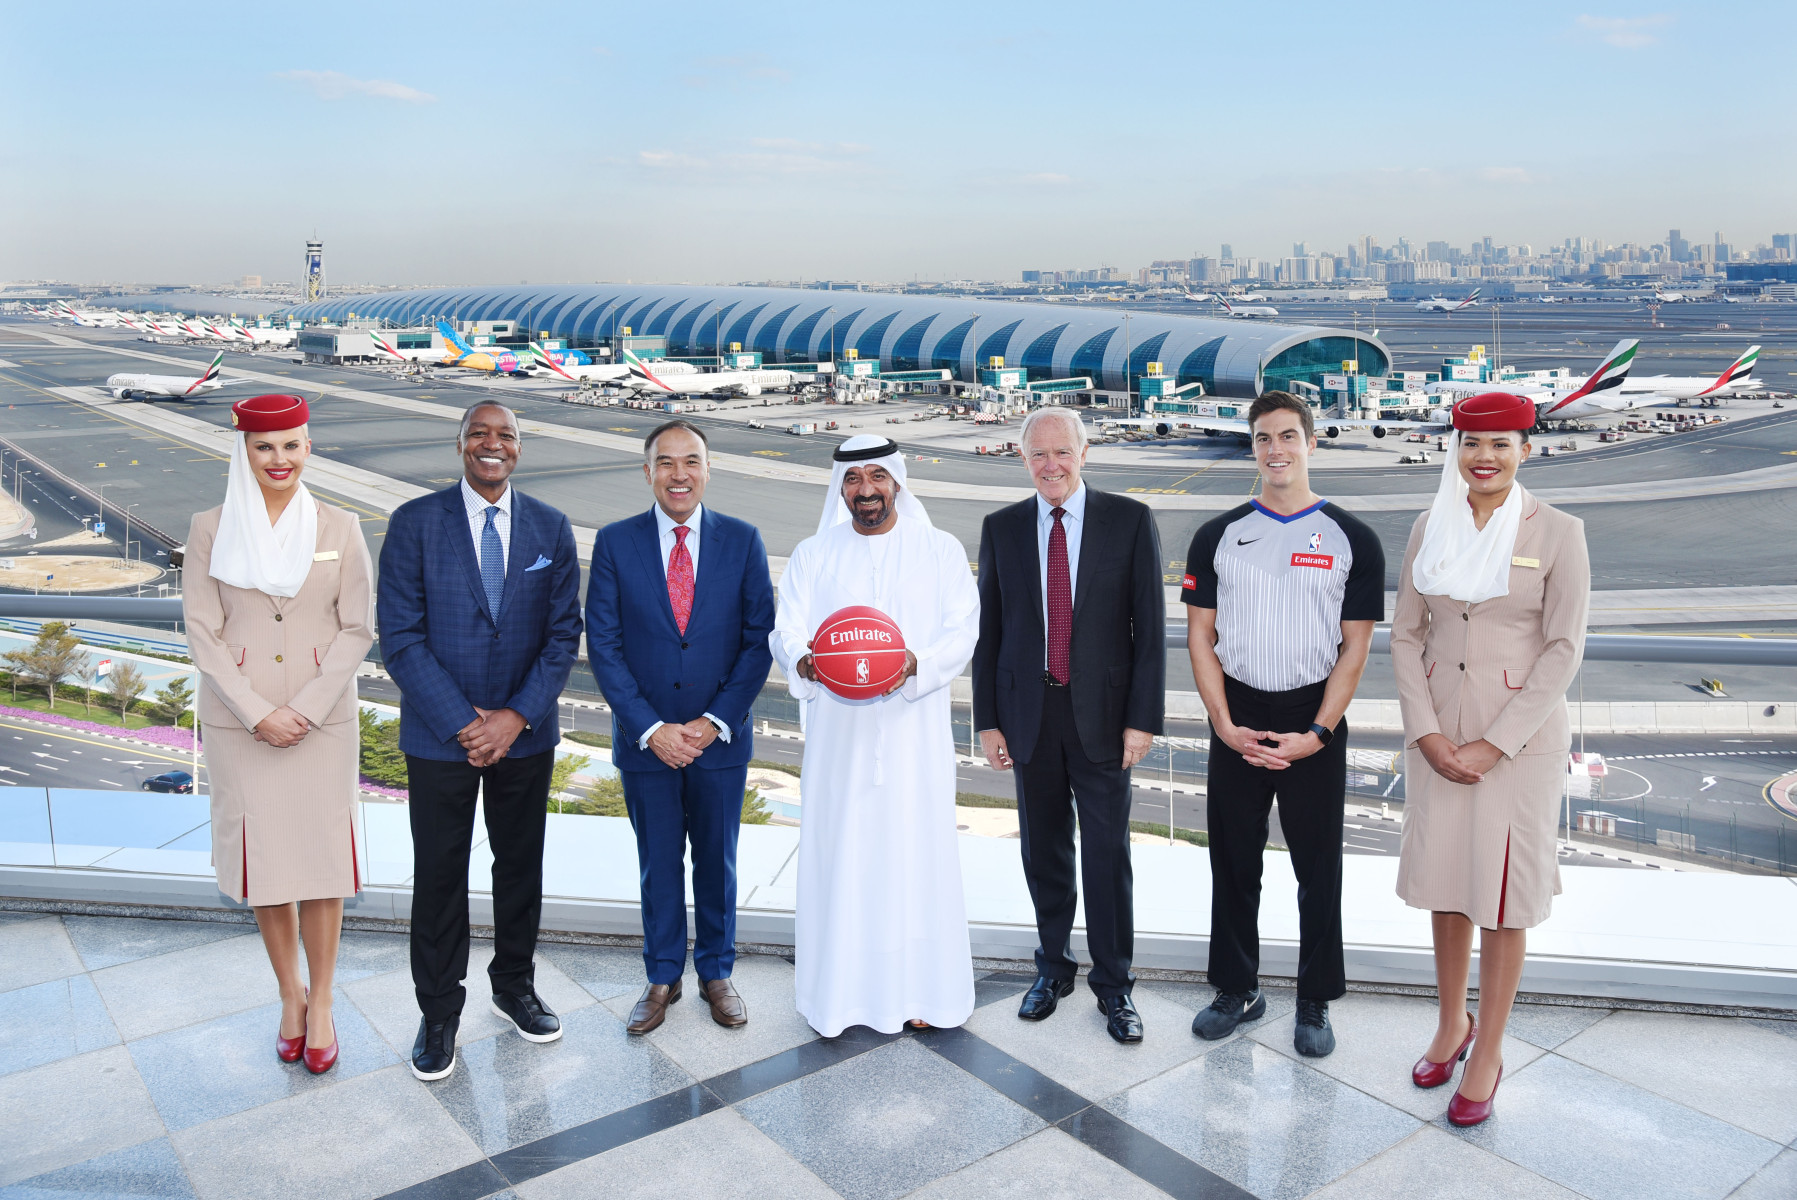 阿联酋航空成为NBA全球航空合作伙伴及NBA阿联酋航空杯冠名合作伙伴